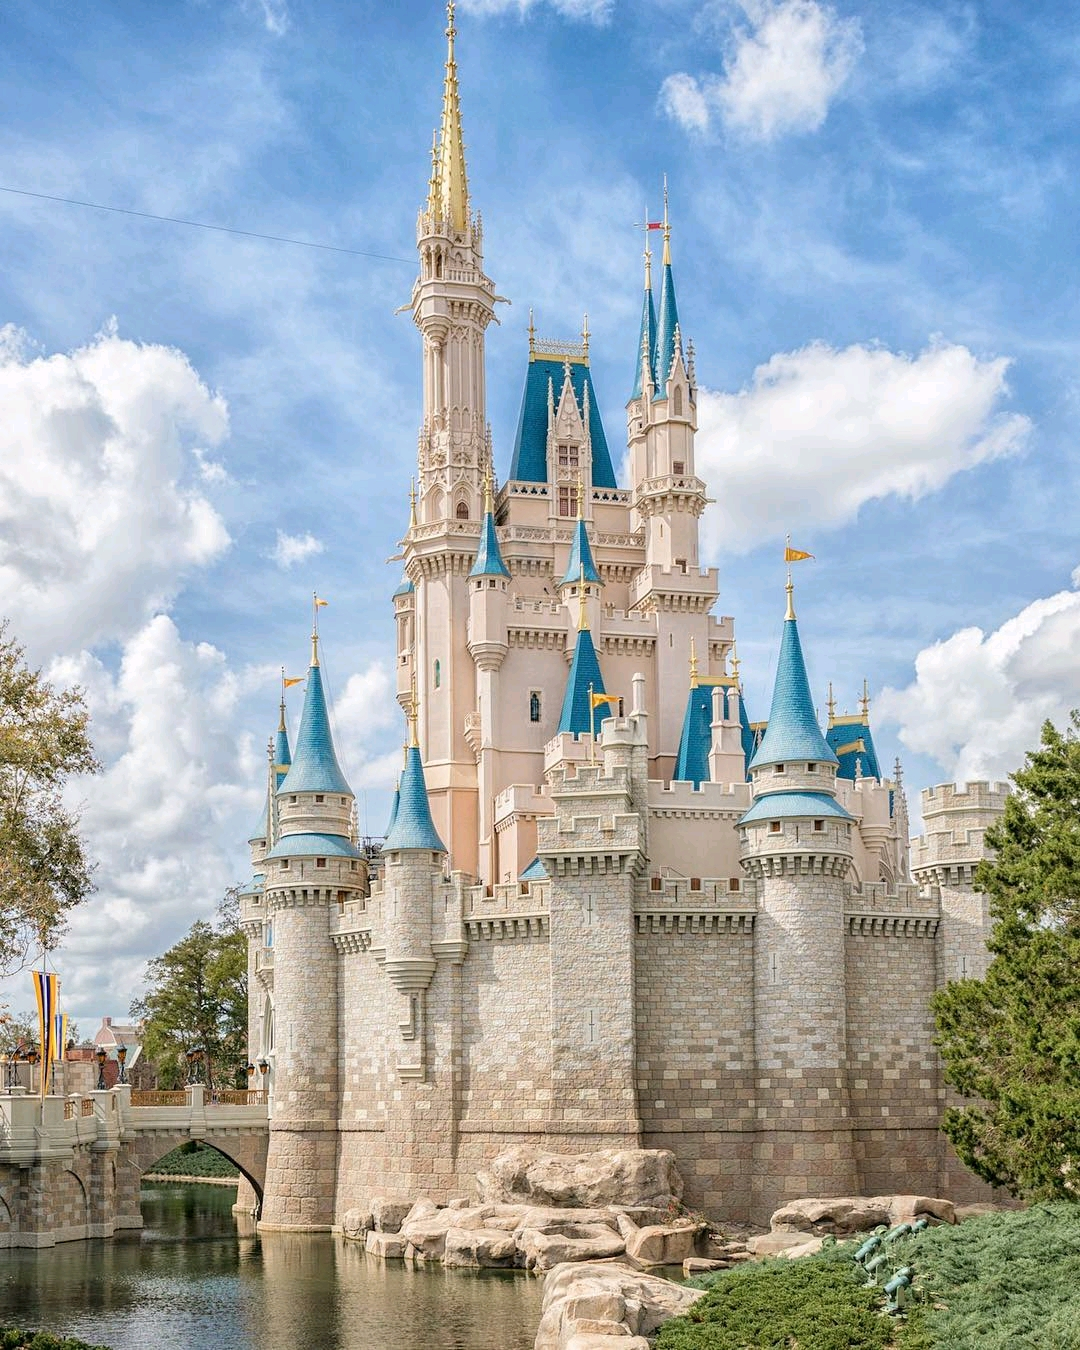 Orlando Disney World Florida viaje vacaciones oferta mejor precio oferta vip 